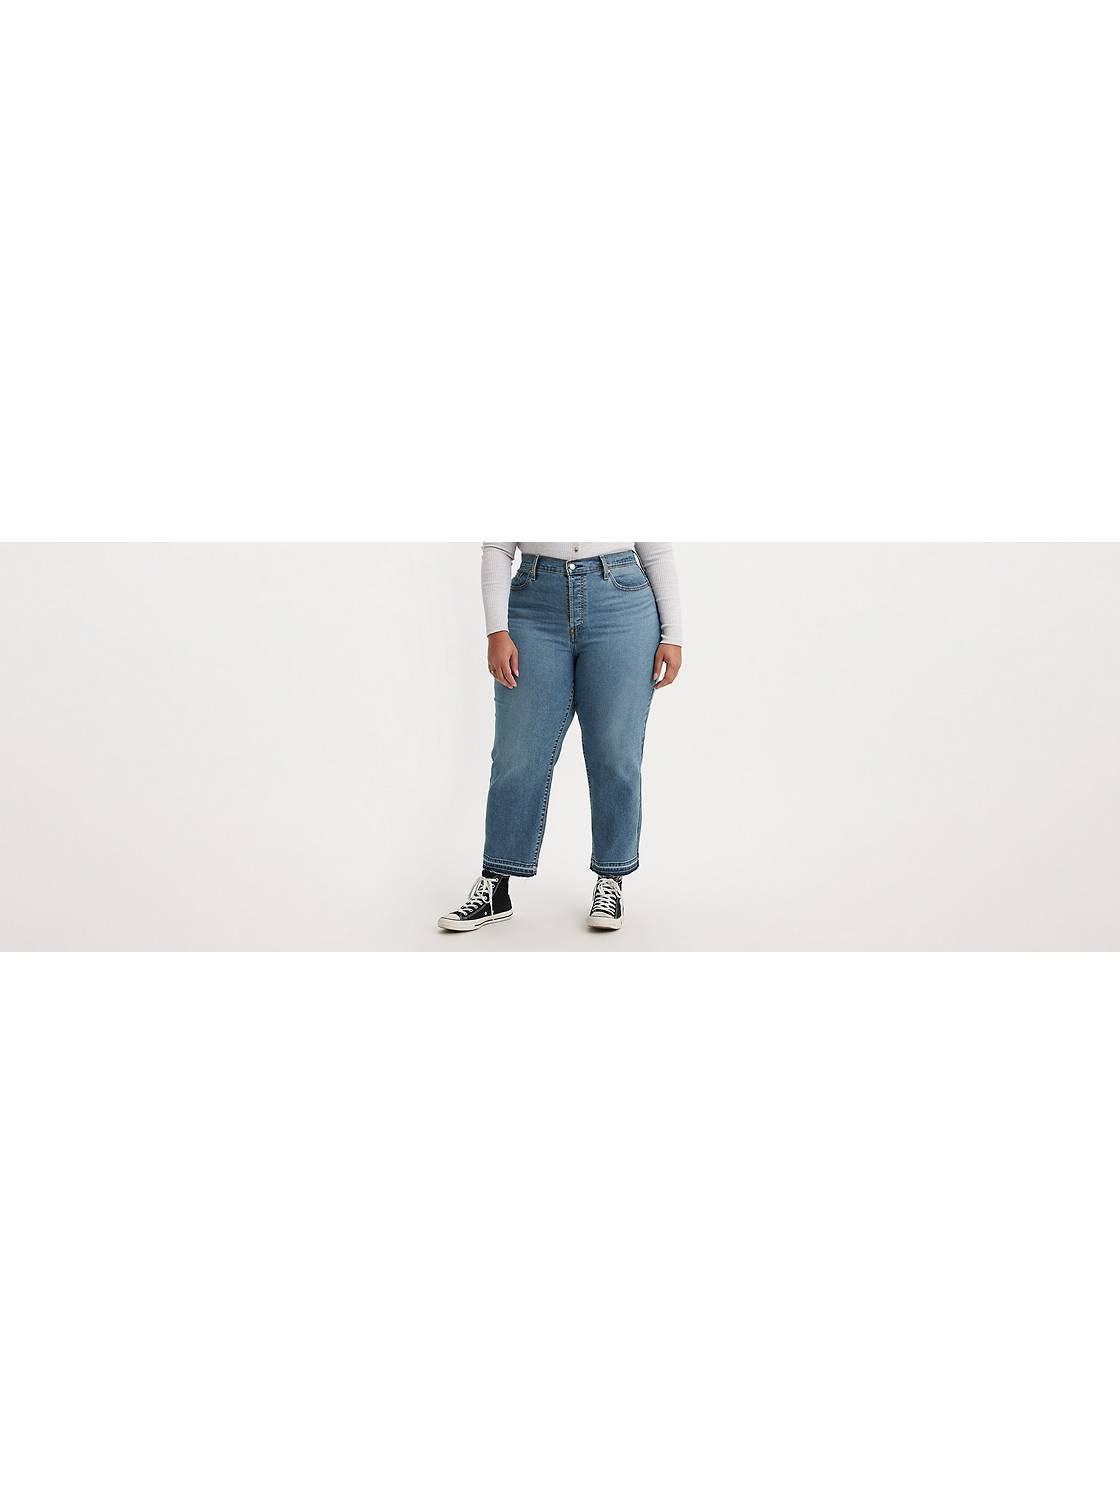 Women's Plus Size Jeans - Shop For Jeans